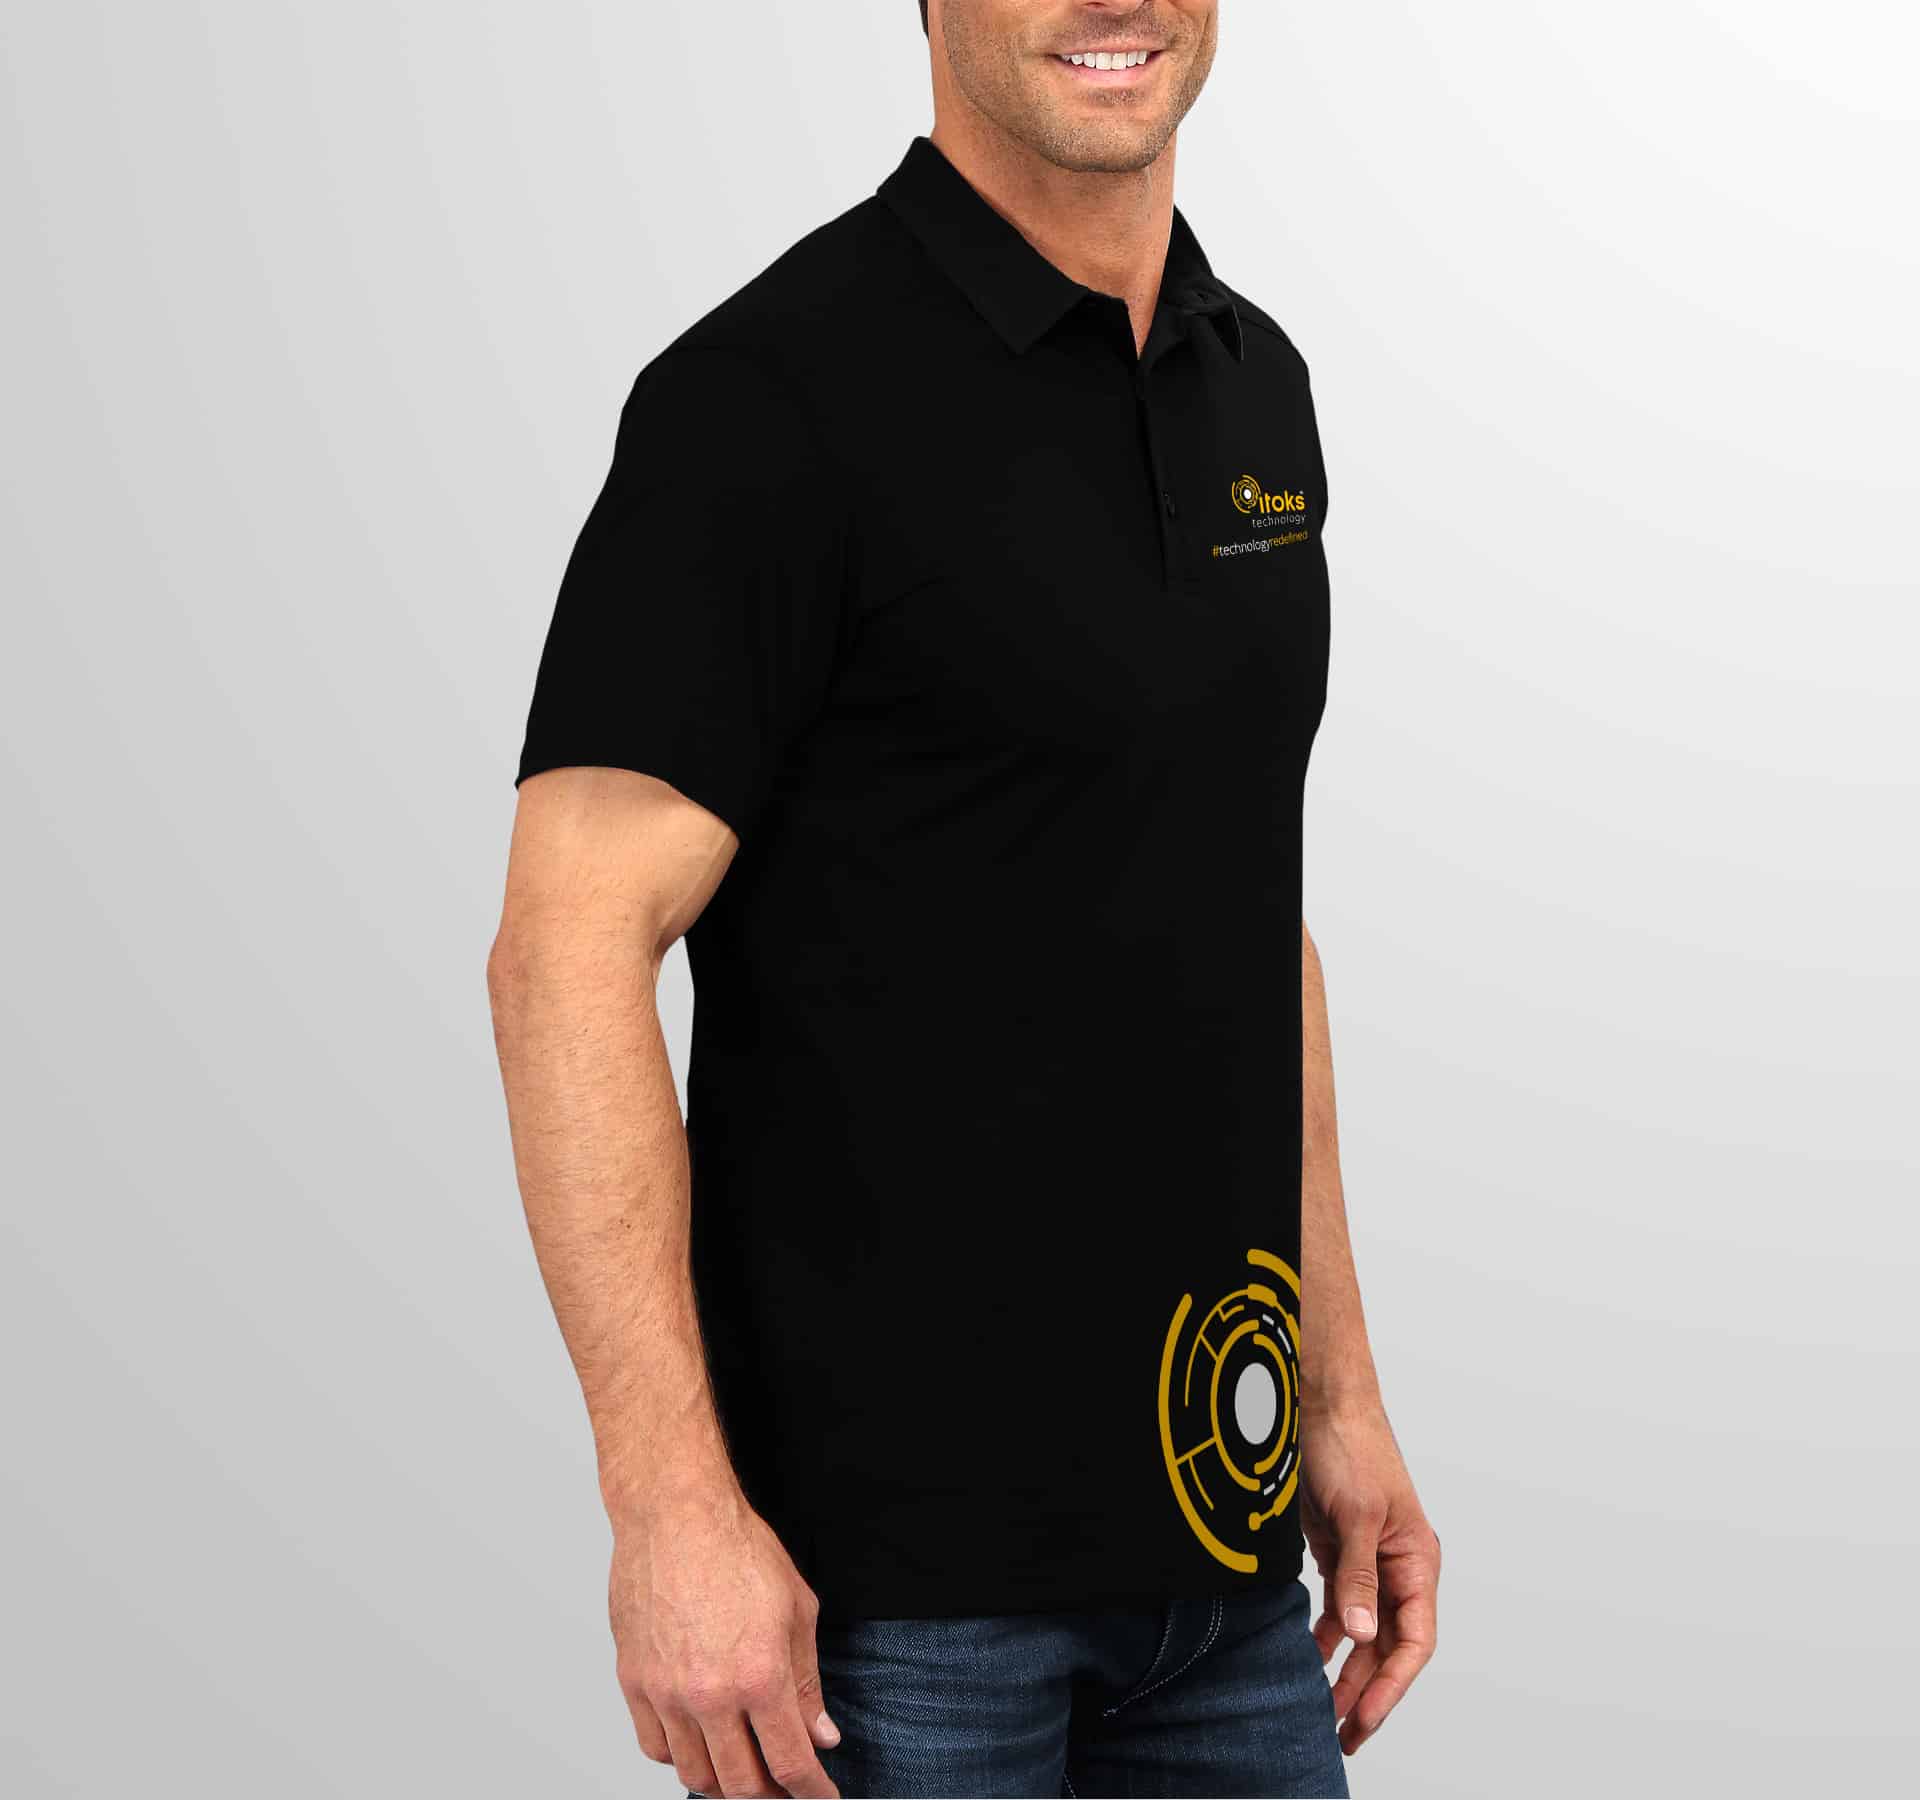 T-Shirt Design for iToks Technology